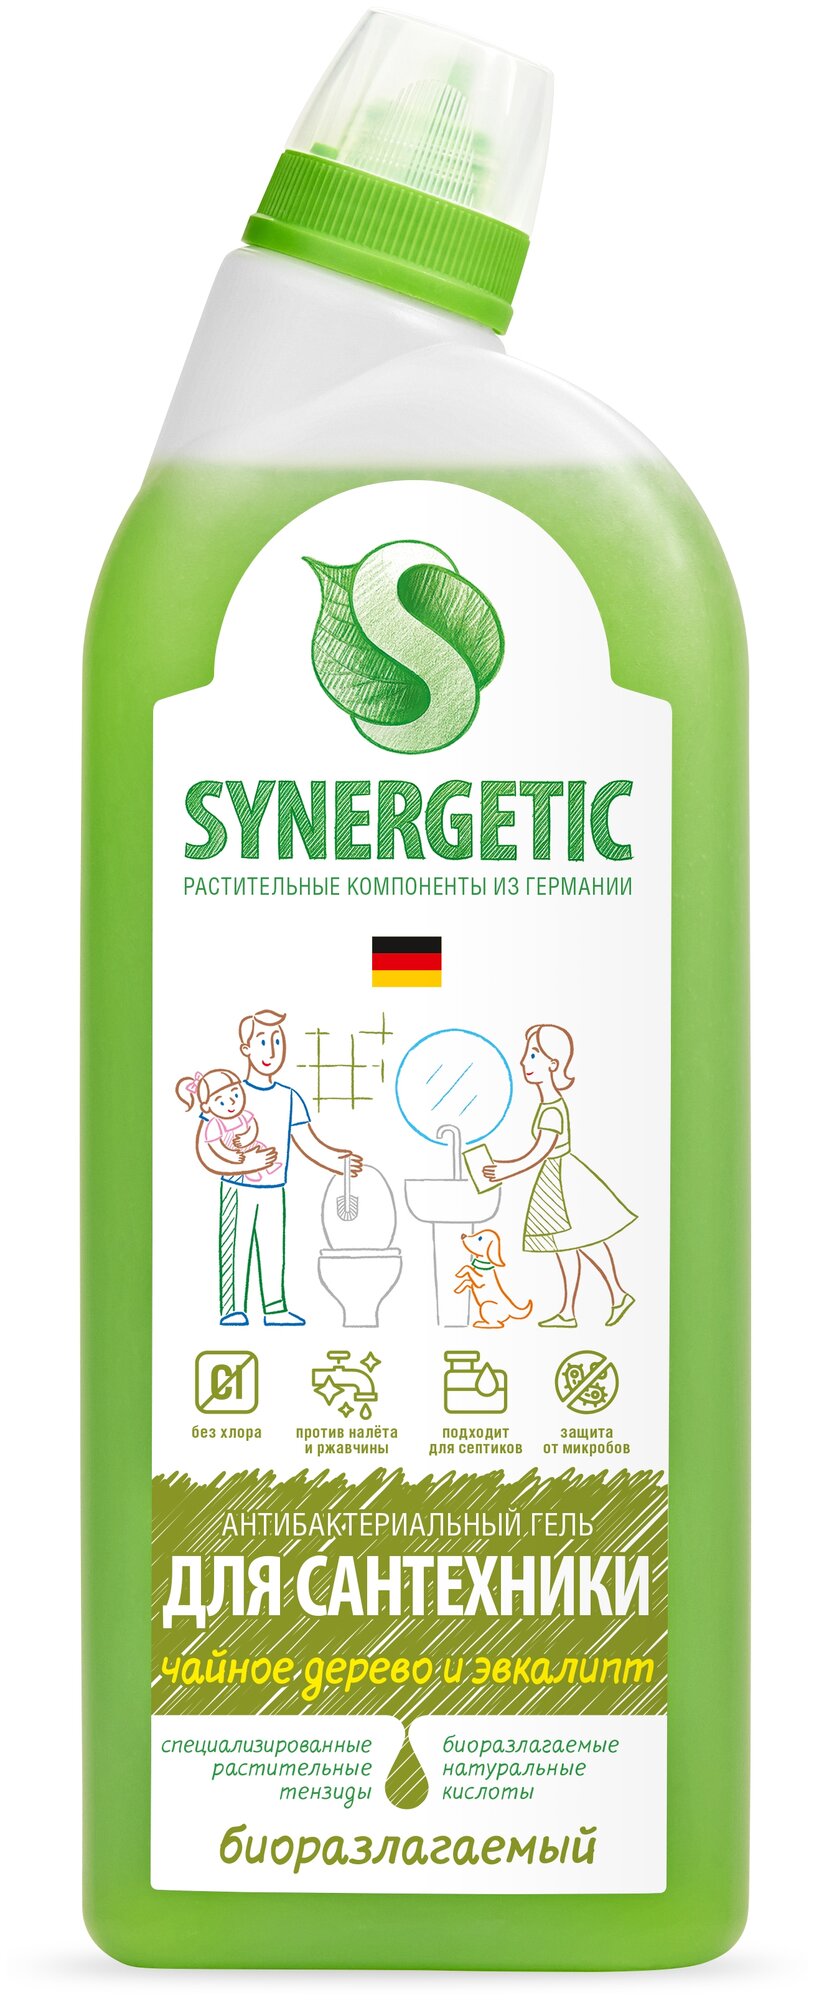 Synergetic антибактериальный гель для сантехники "Чайное дерево и эвкалипт"